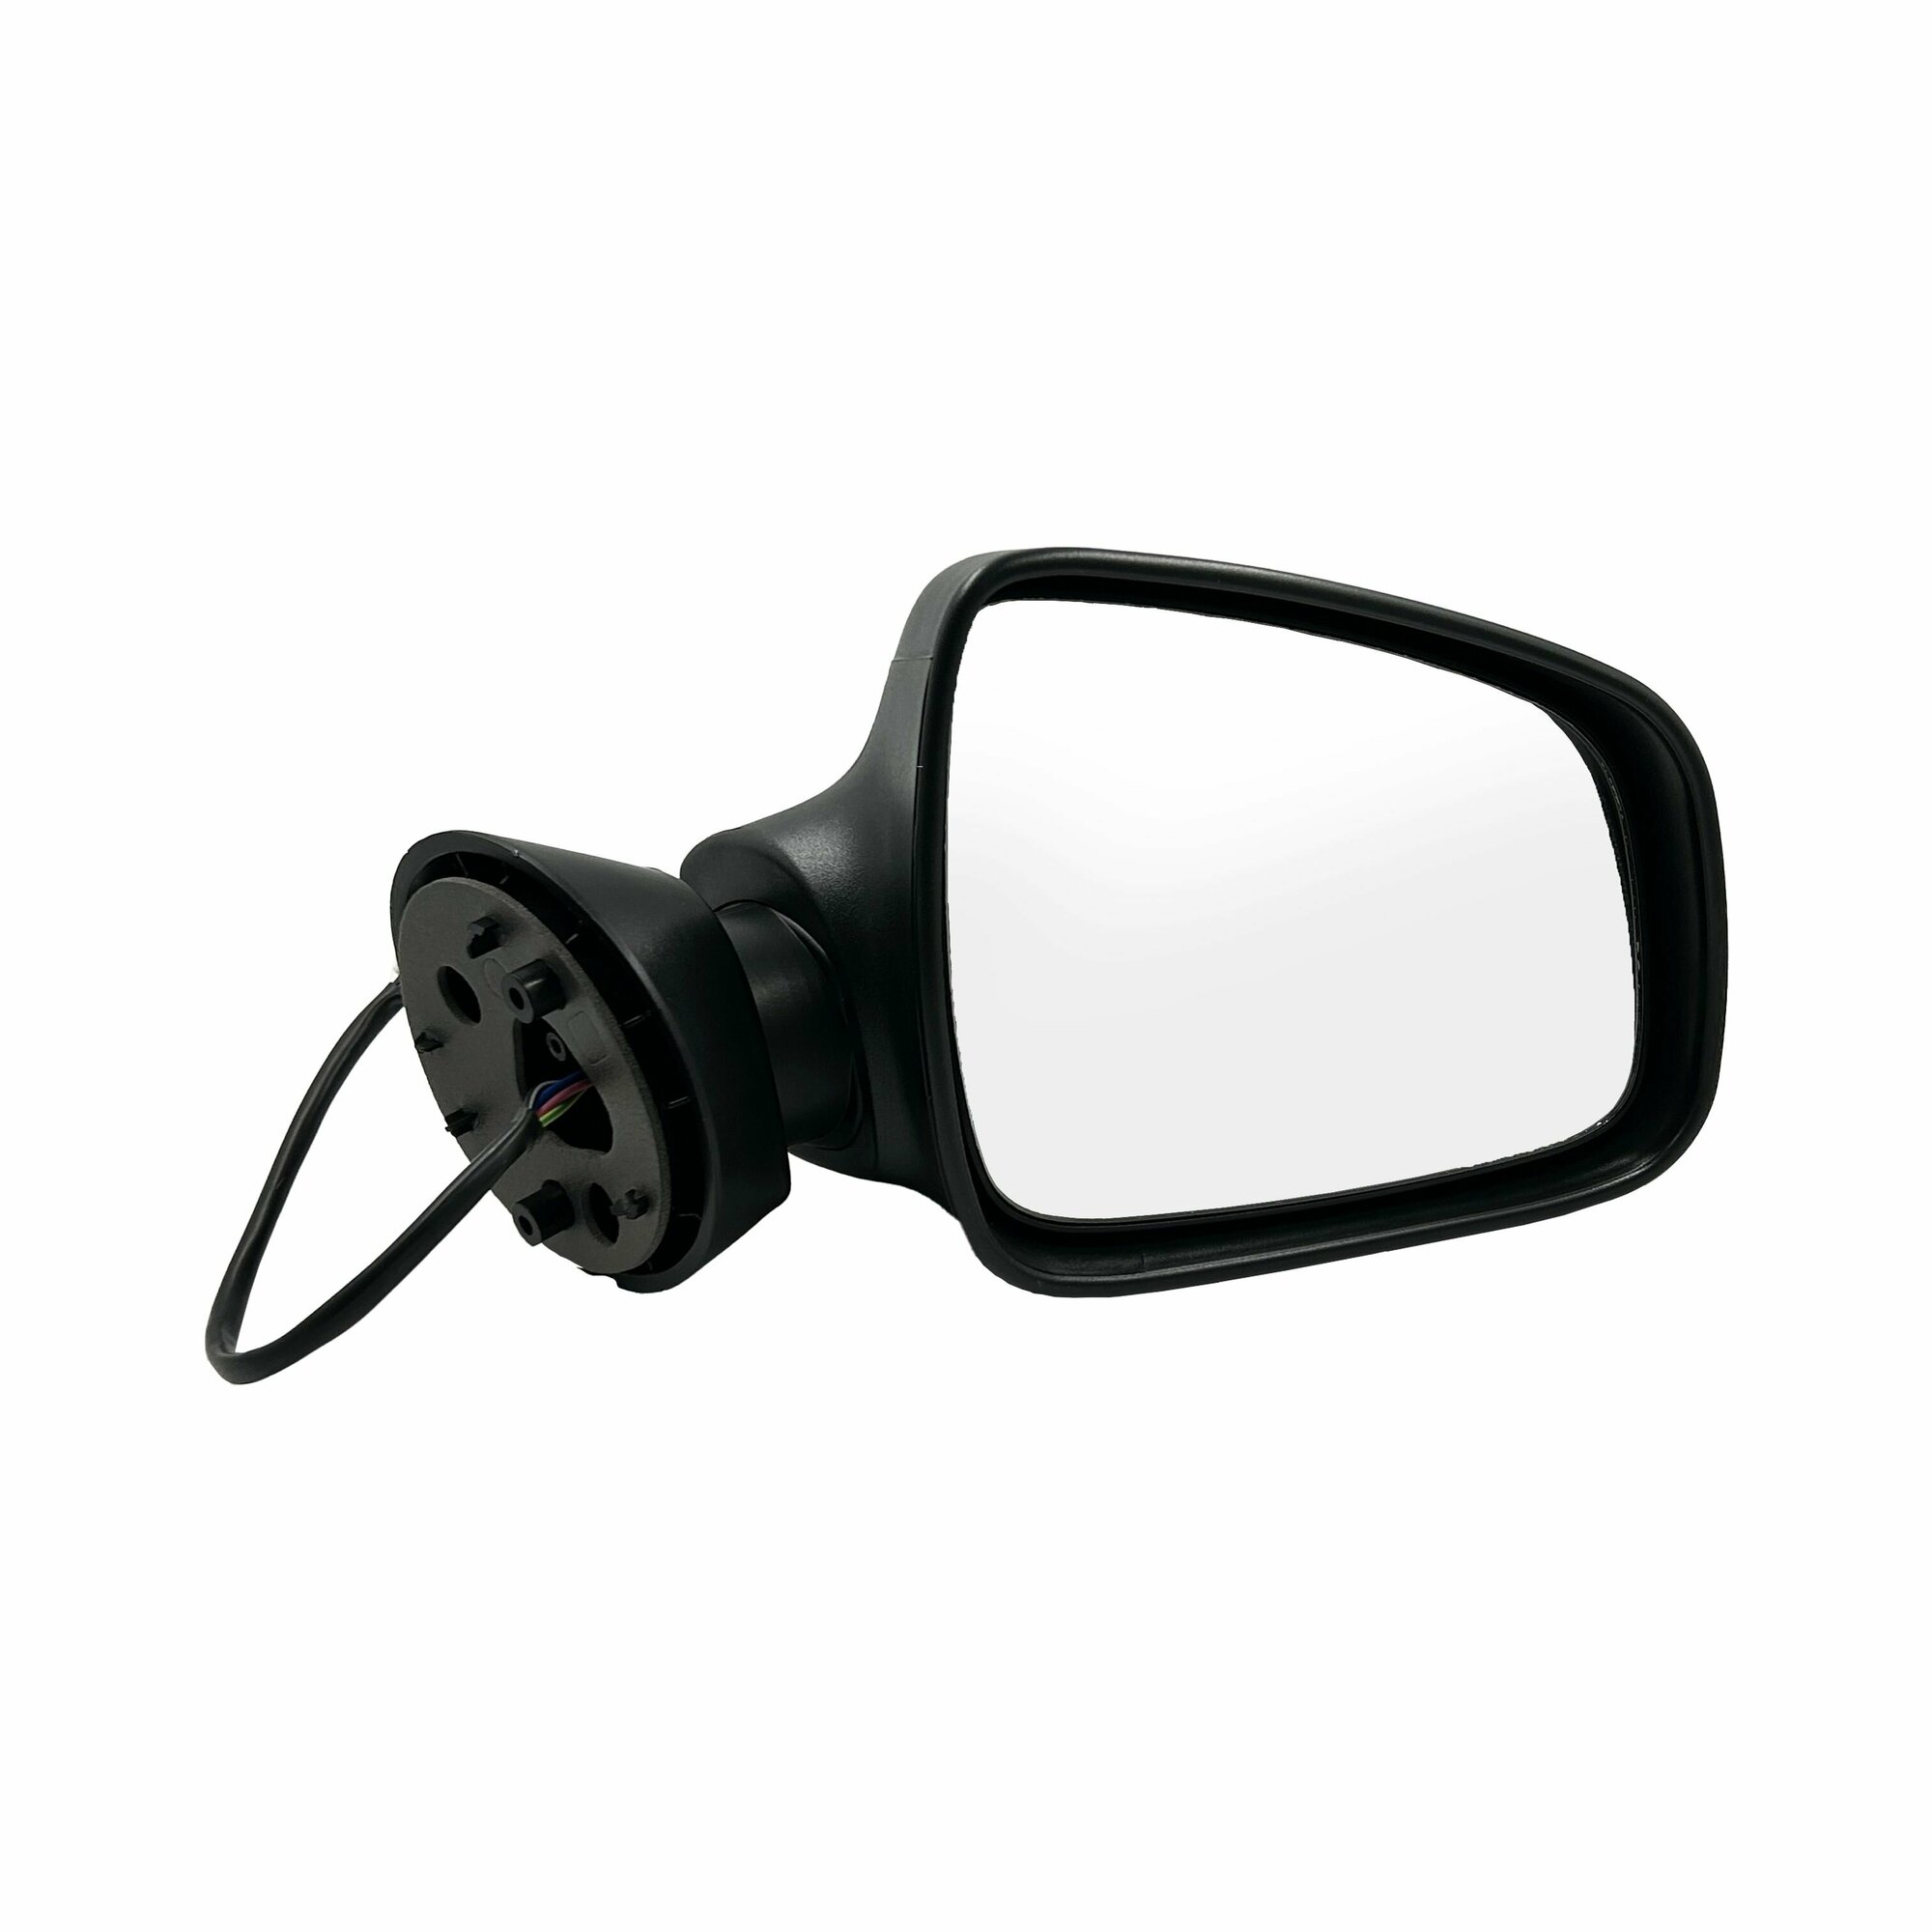 Зеркало наружное заднего вида правое с электроприводом и обогревом - Lada Largus Renault Logan Sandero Duster - Автоблик арт. R90.8201120 (210)